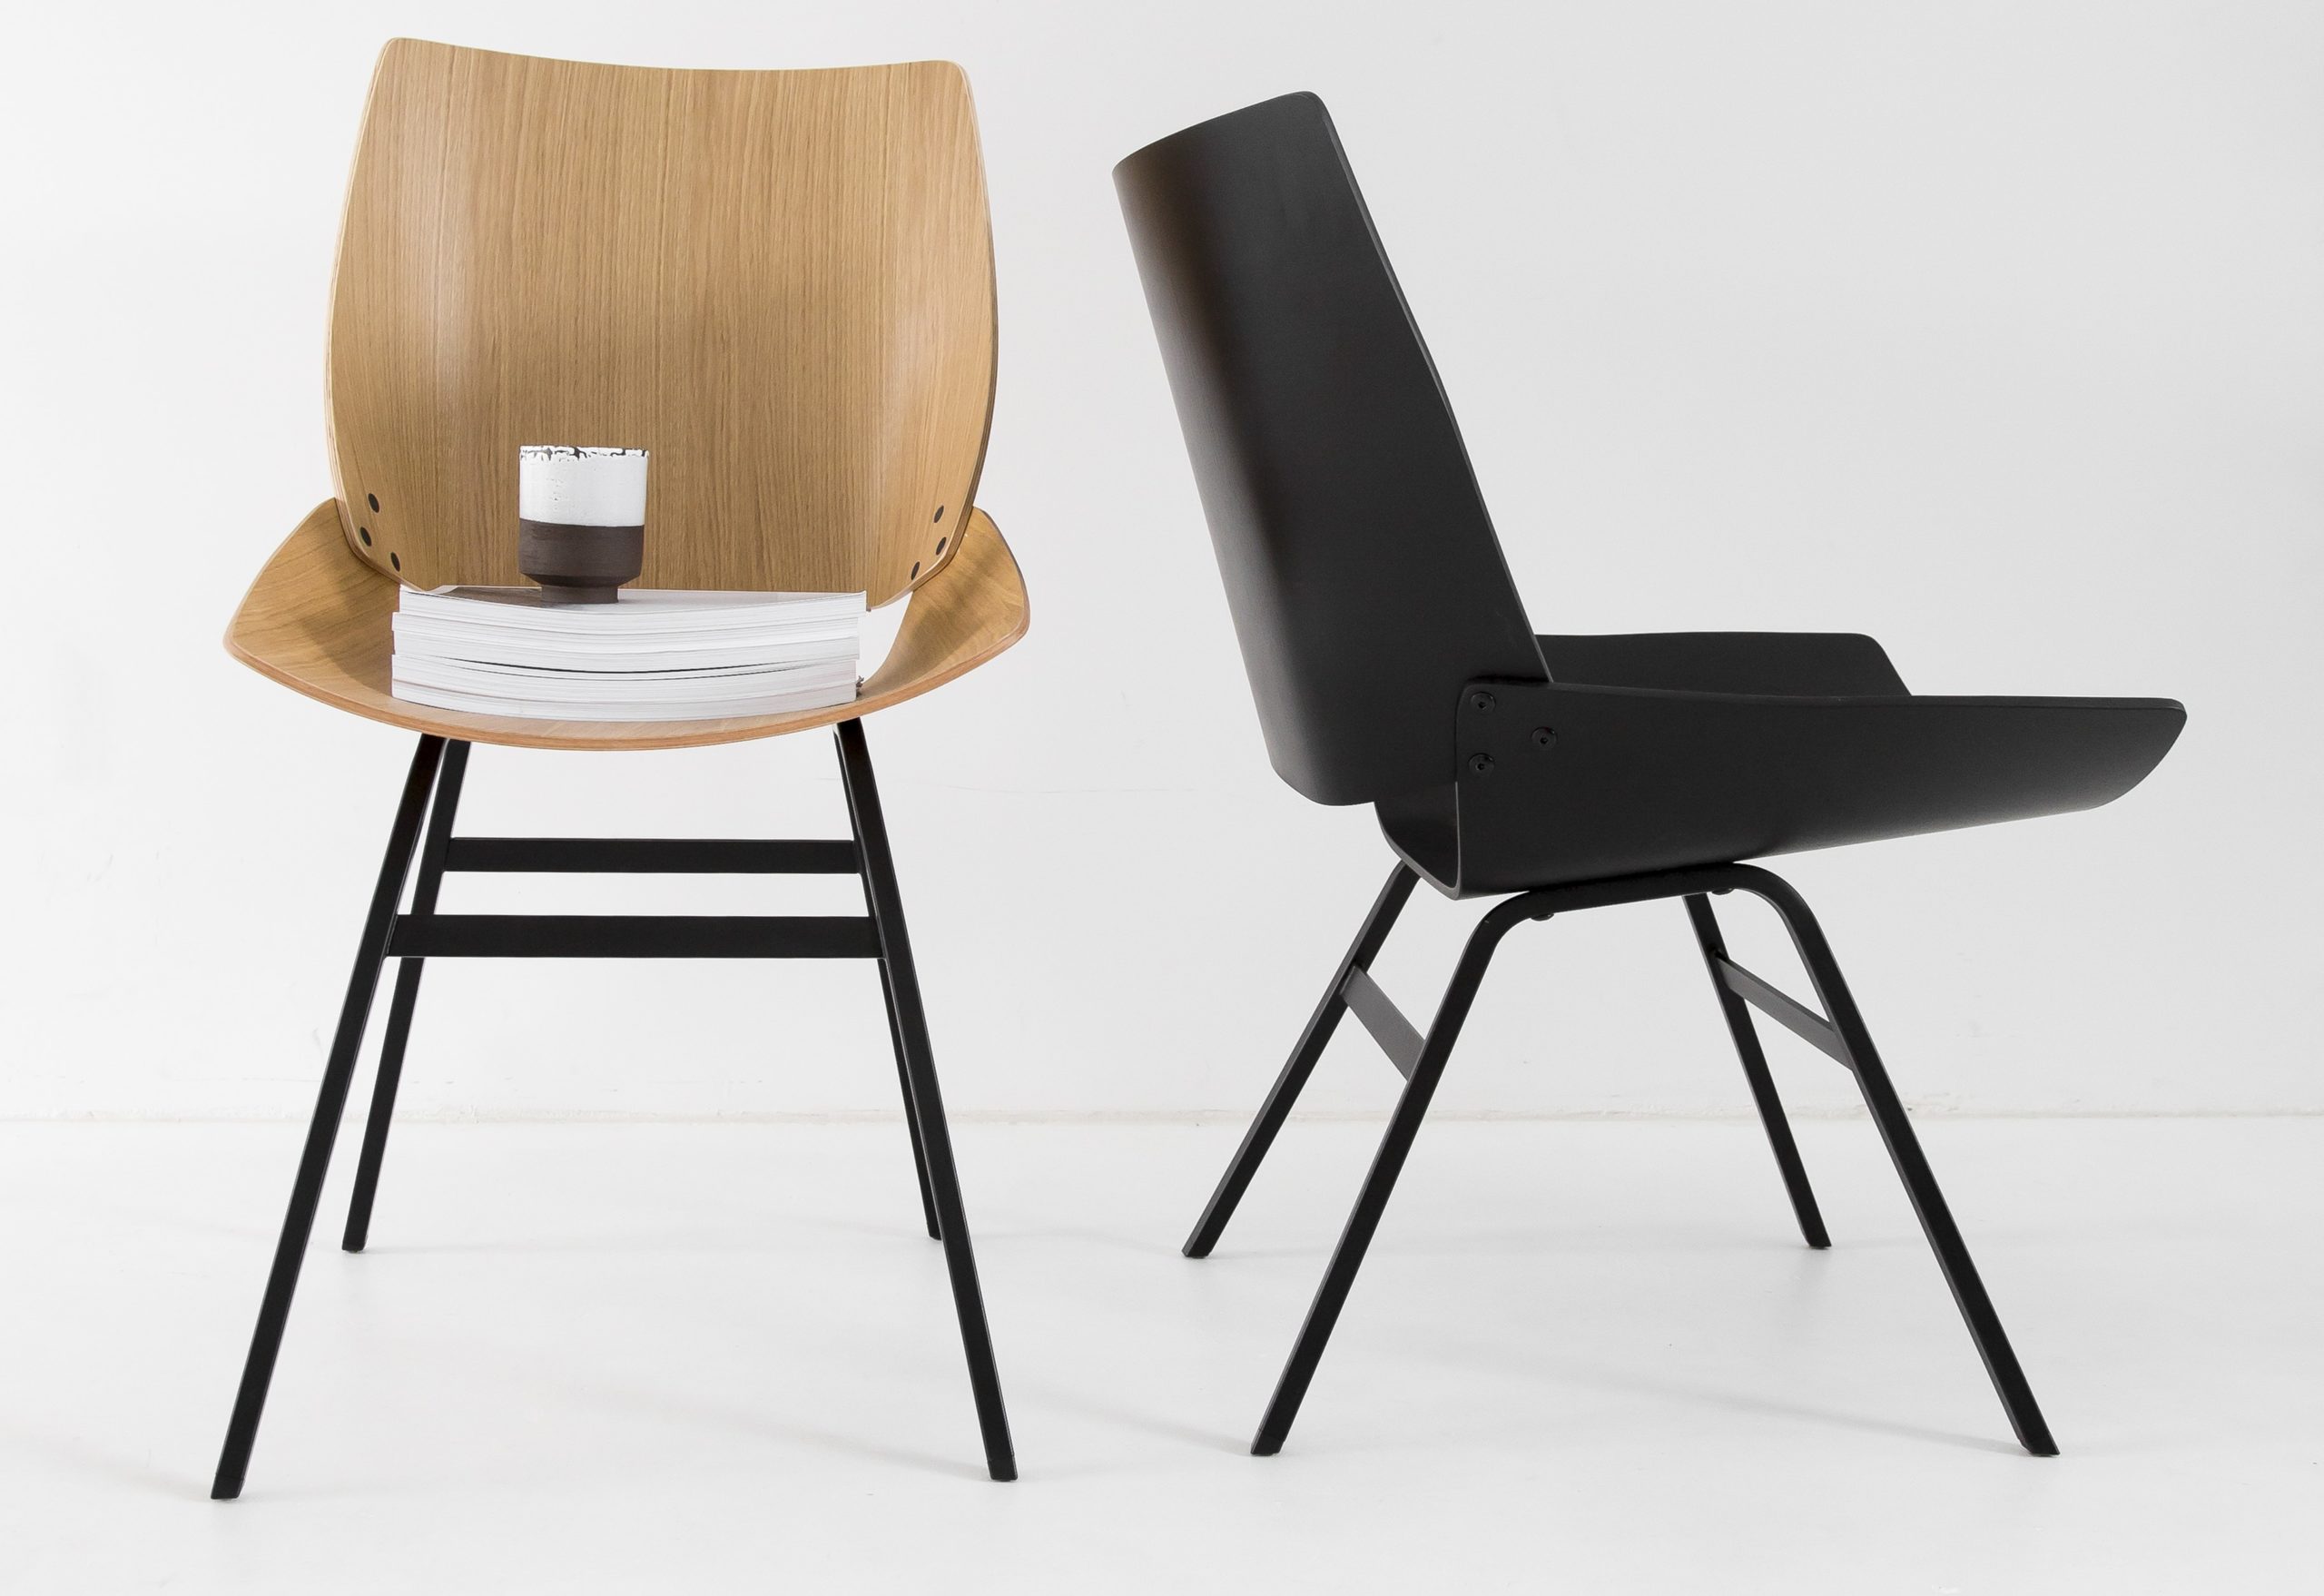 Stuhl Shell ist en Designerstuhl von Seleform